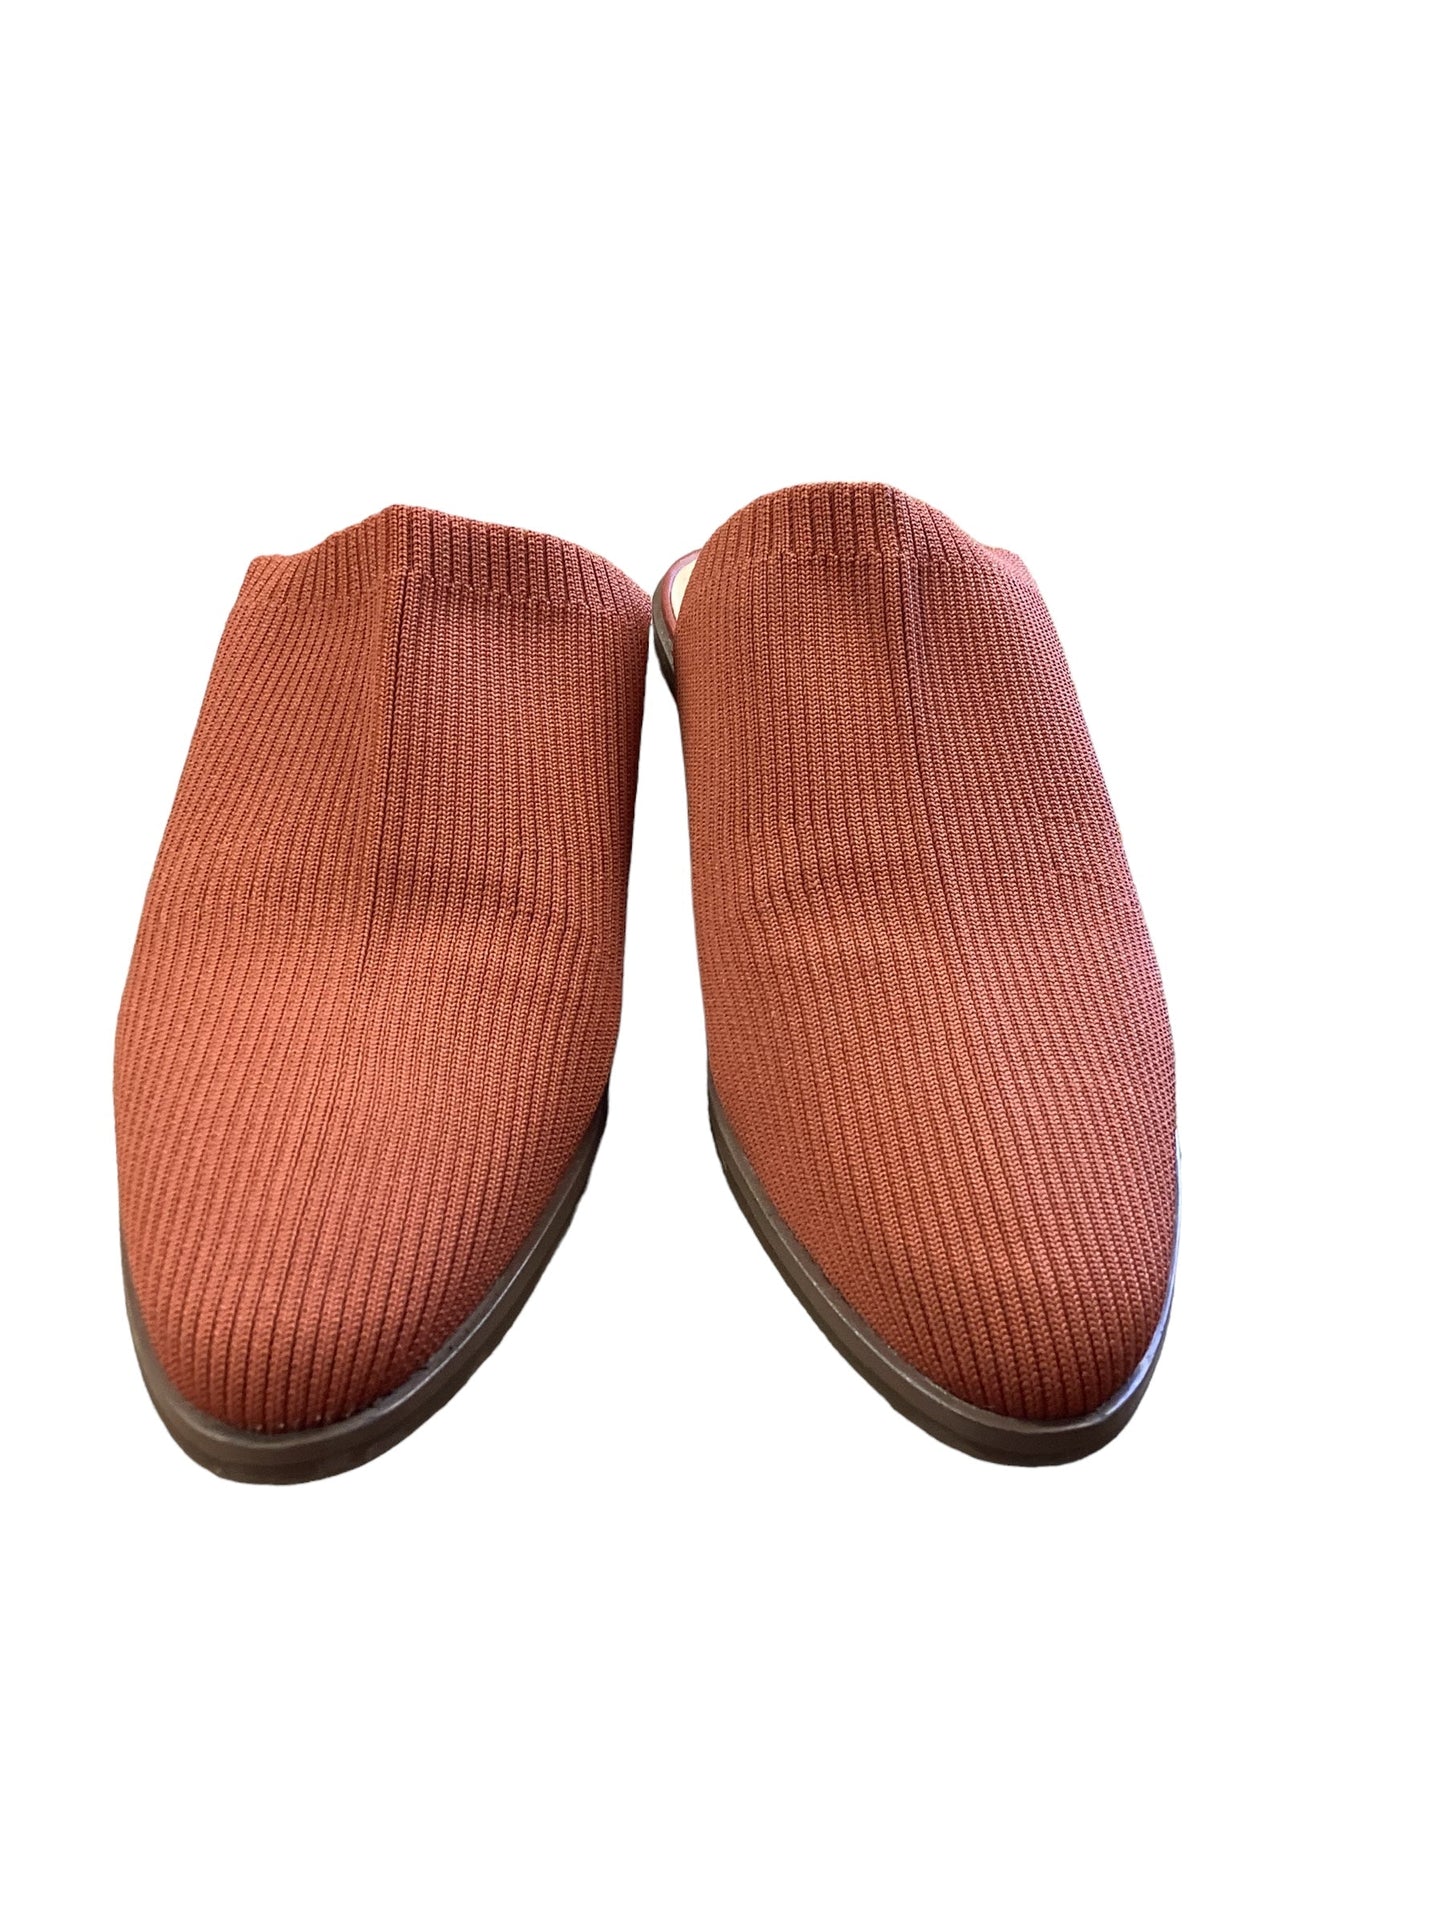 Orange Shoes Flats Market & Spruce, Size 11